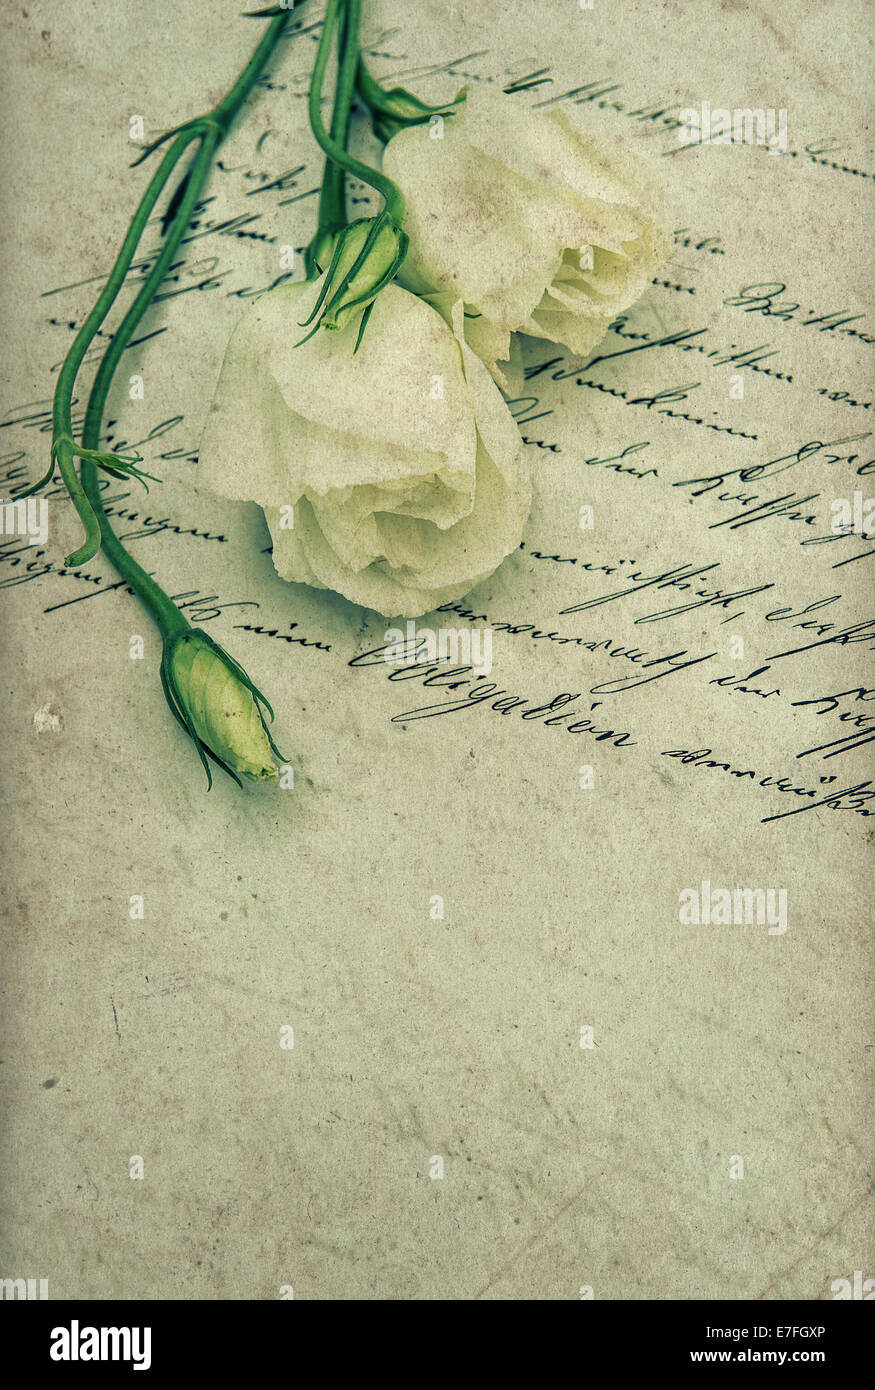 Manuscrite ancienne lettre d'amour avec des fleurs. arrière-plan sentimental nostalgique. retro toned photo Banque D'Images